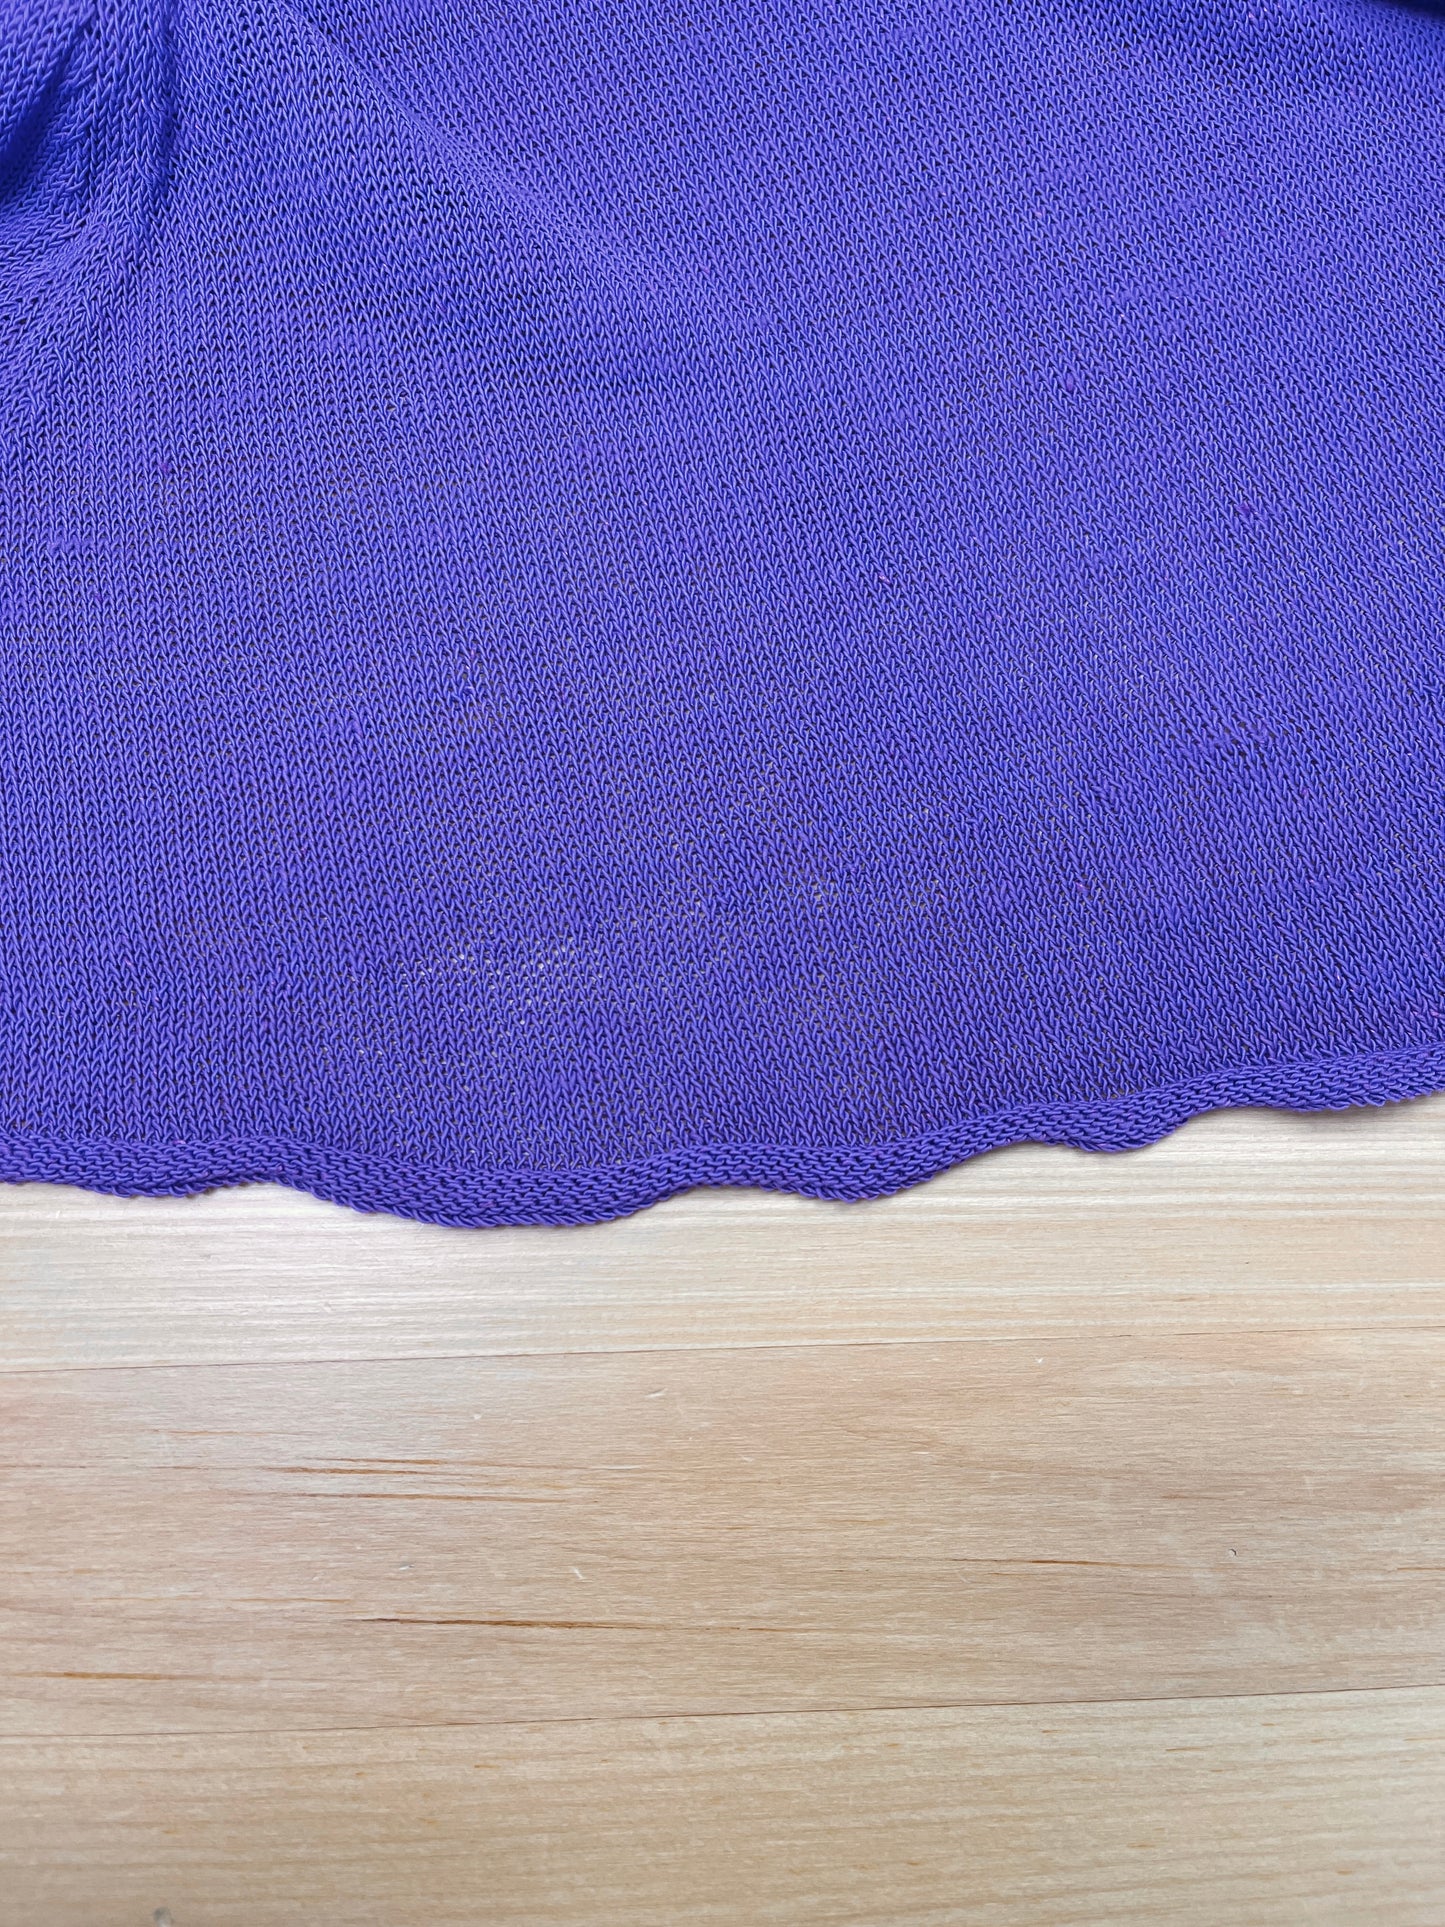 Chandail mauve à colliers textiles assortis (XS/S)